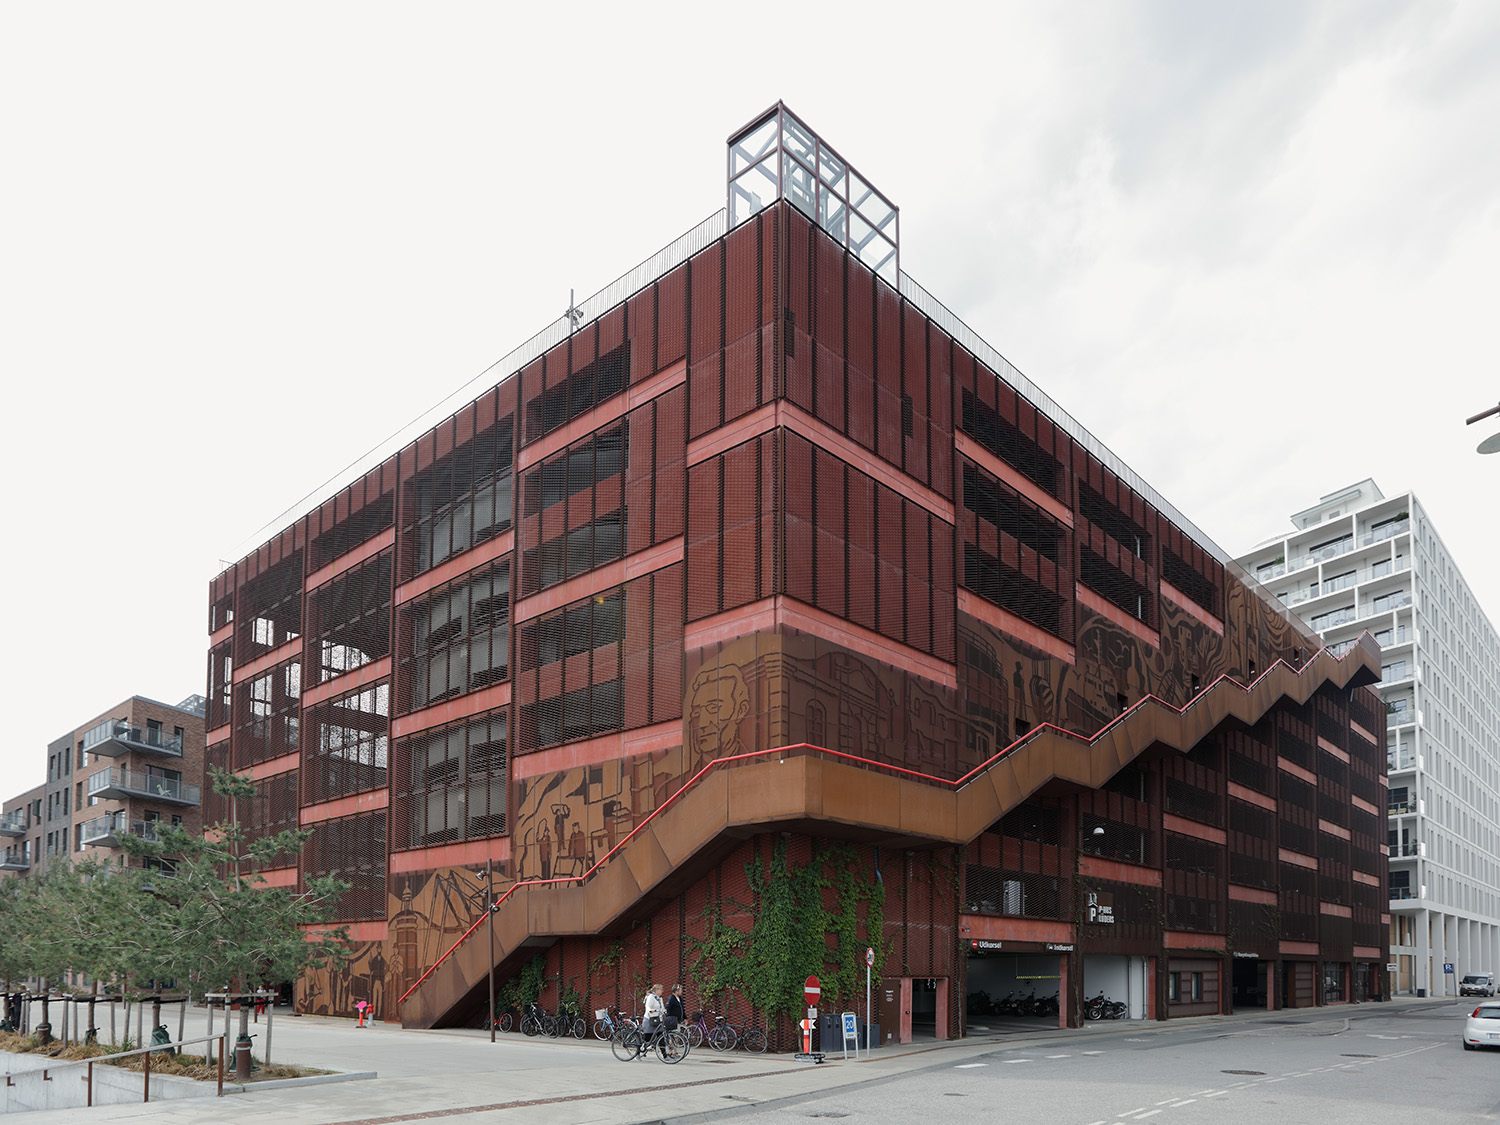 Parking House in Nordhavn
JAJA Architects, 2016
Nordhavn, Copenhagen, Denmark